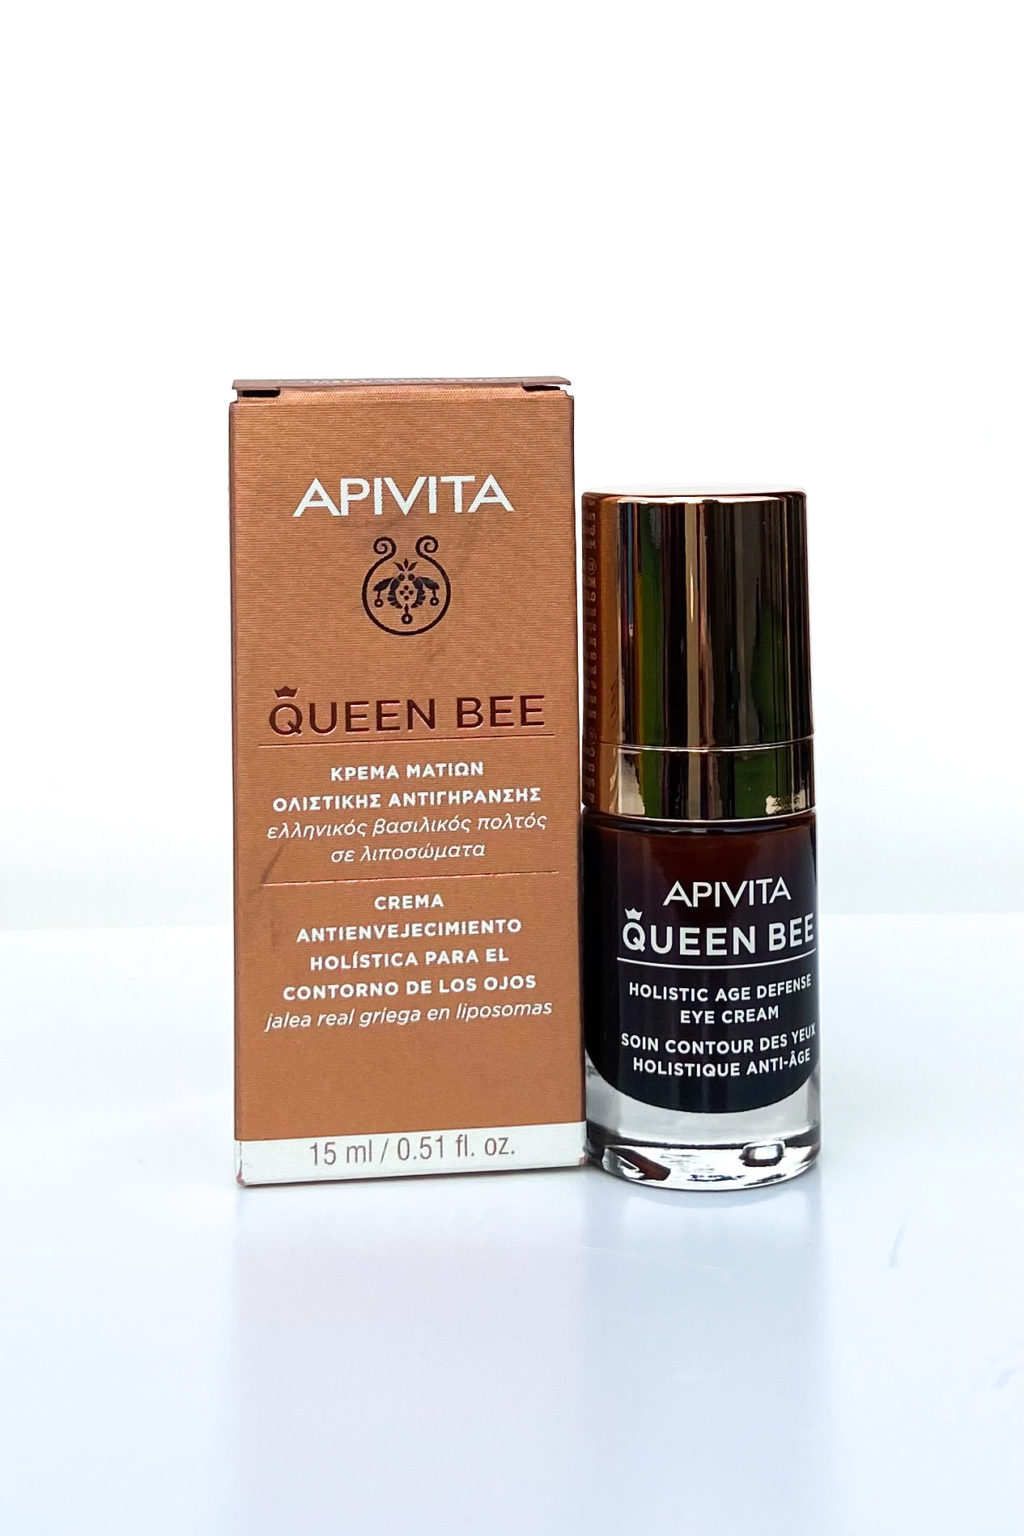 Apivita Queen Bee Holistic Age Defense Eye Cream Contorno de ojos